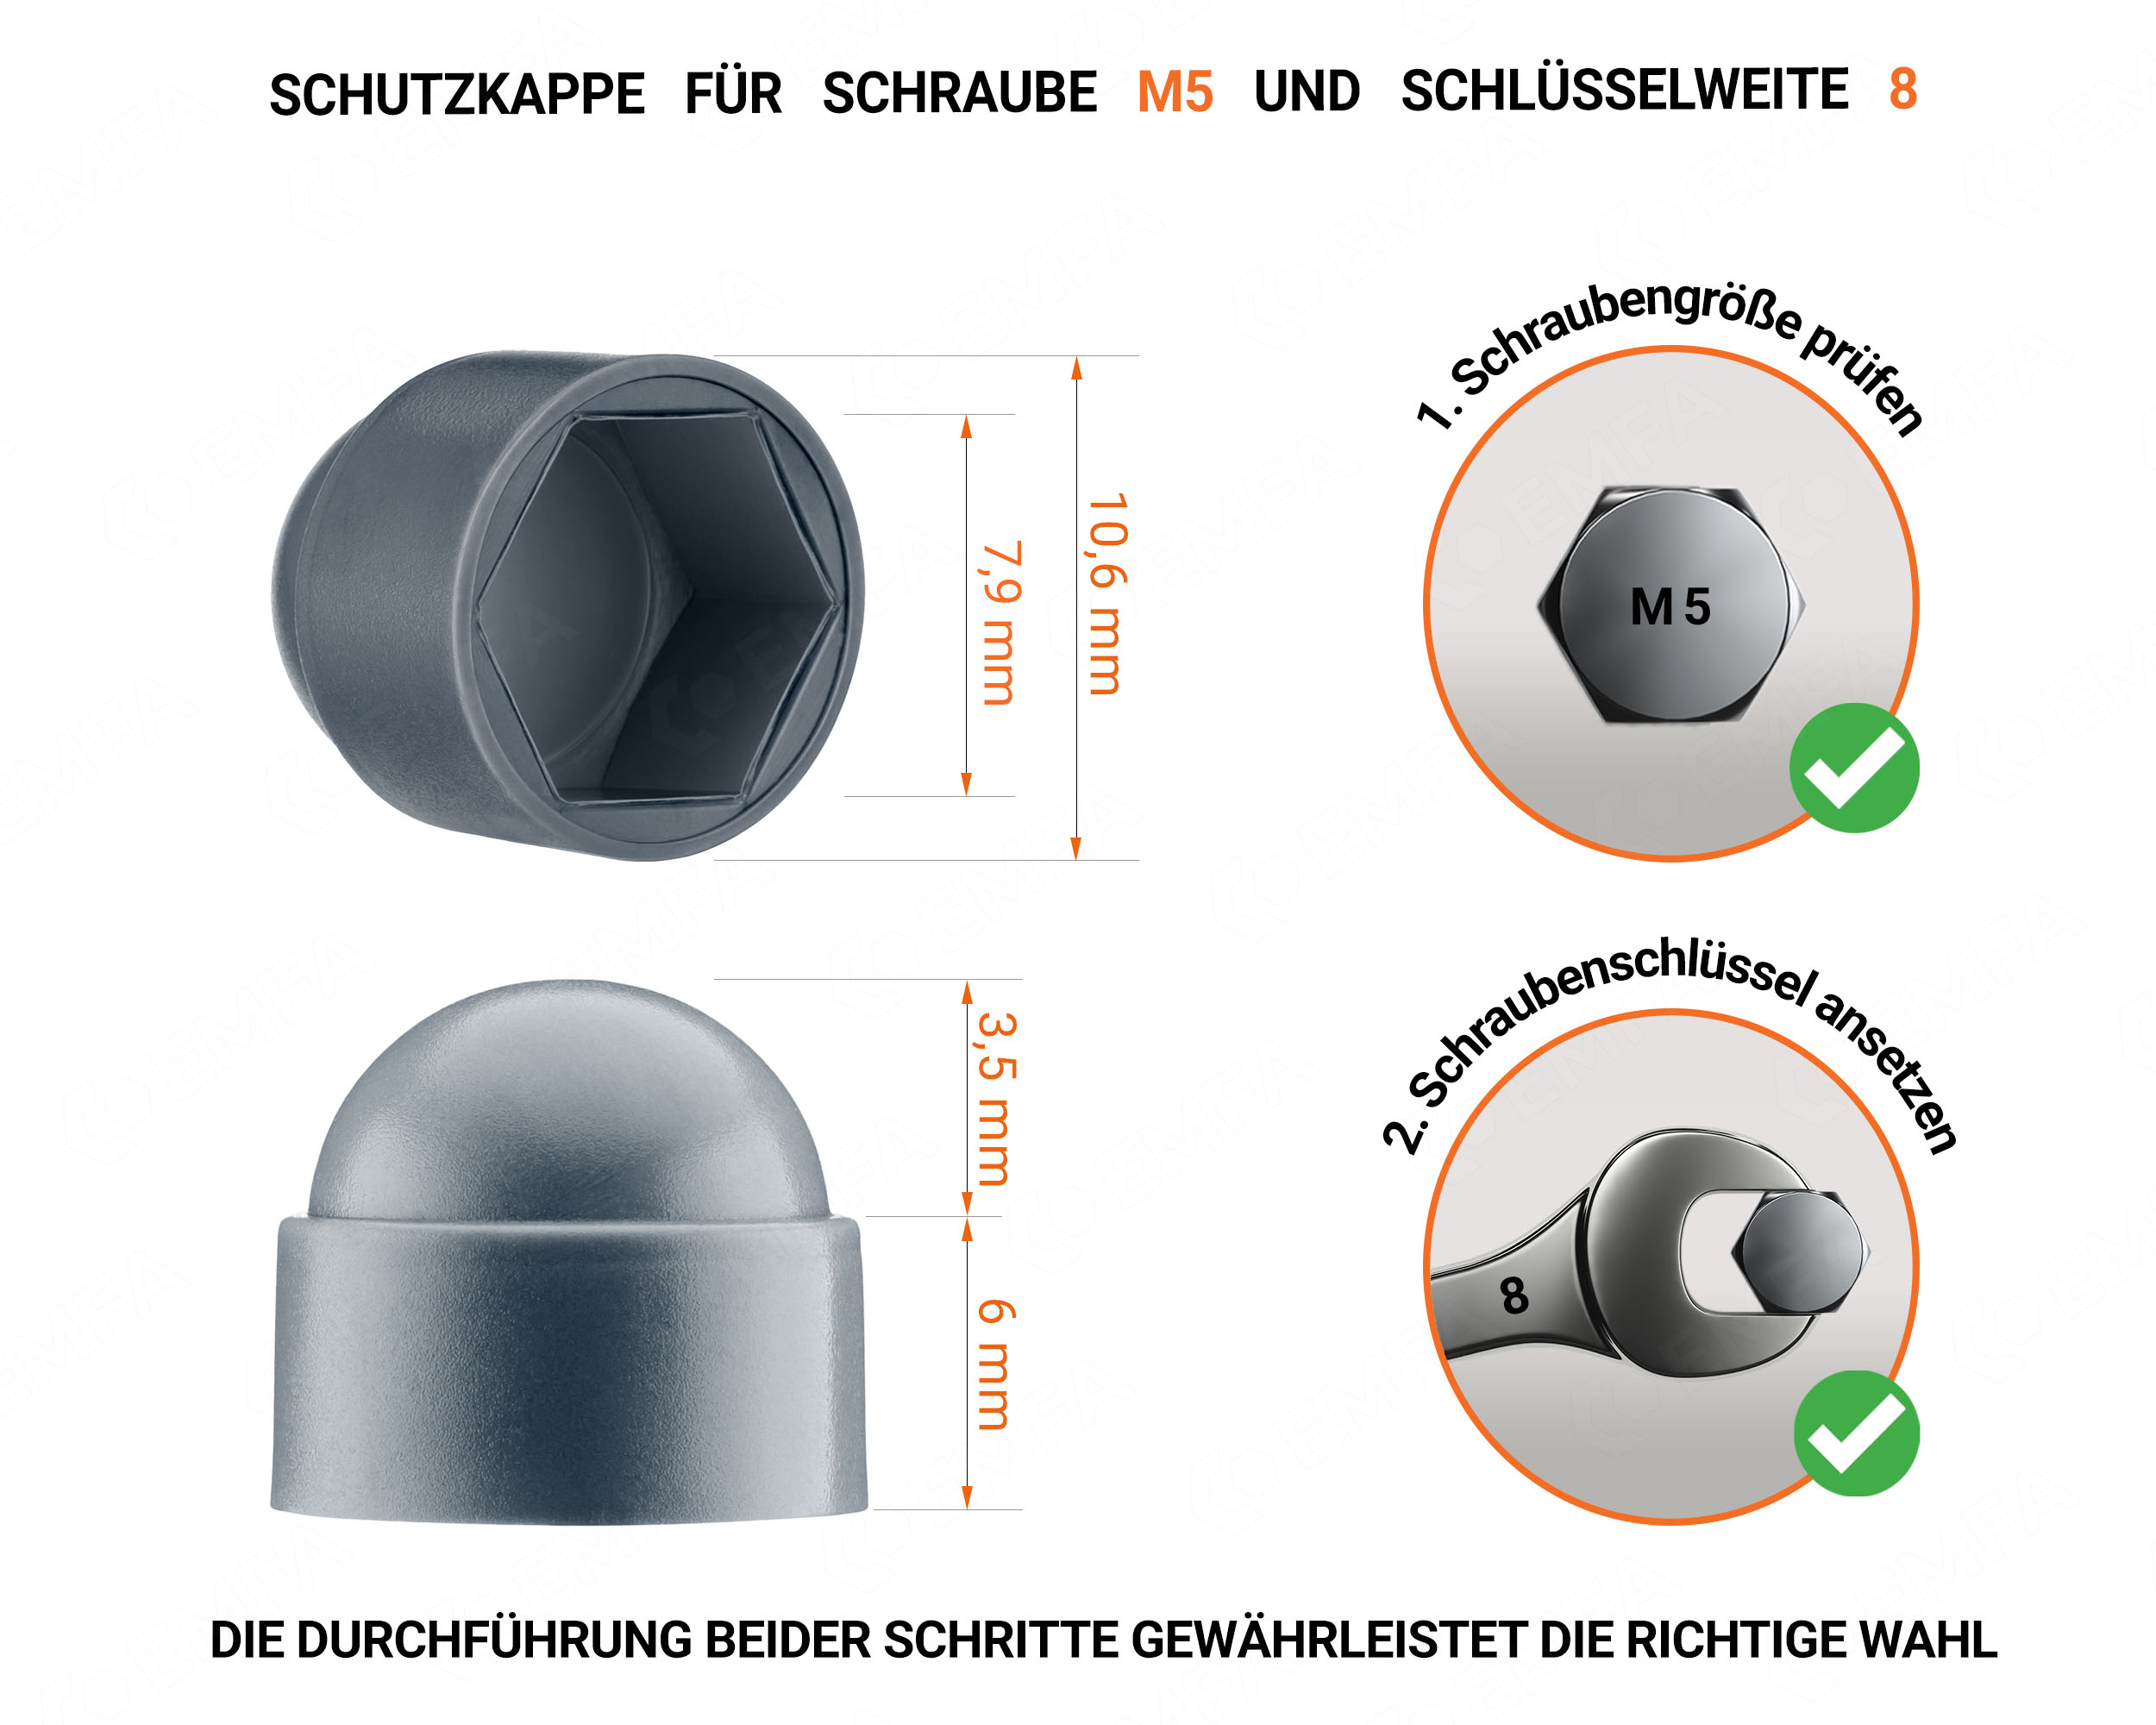 Anthrazite Schutzkappen für Schrauben M5 Schlüsselweite 8 mit technischen Abmessungen und Anleitung für korrekte Messung